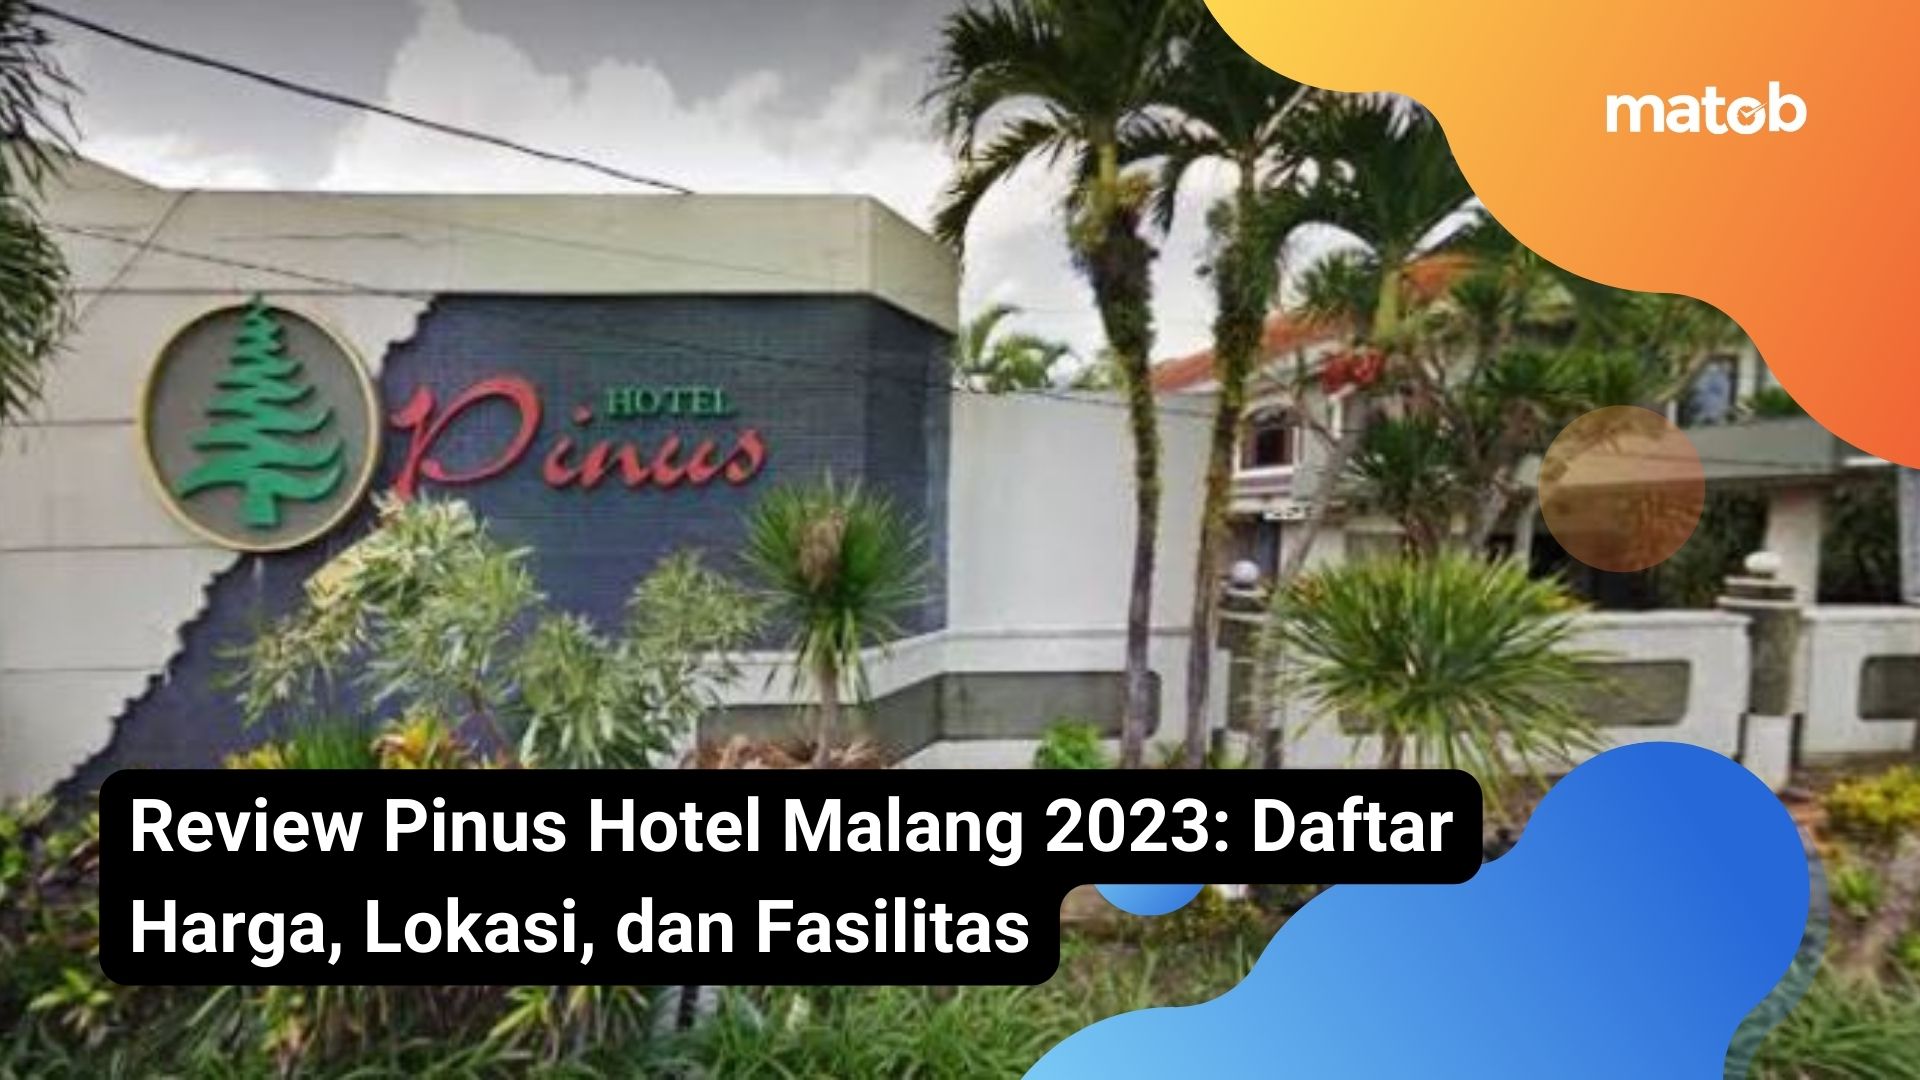 Review Pinus Hotel Malang 2023: Daftar Harga, Lokasi,, dan Fasilitas